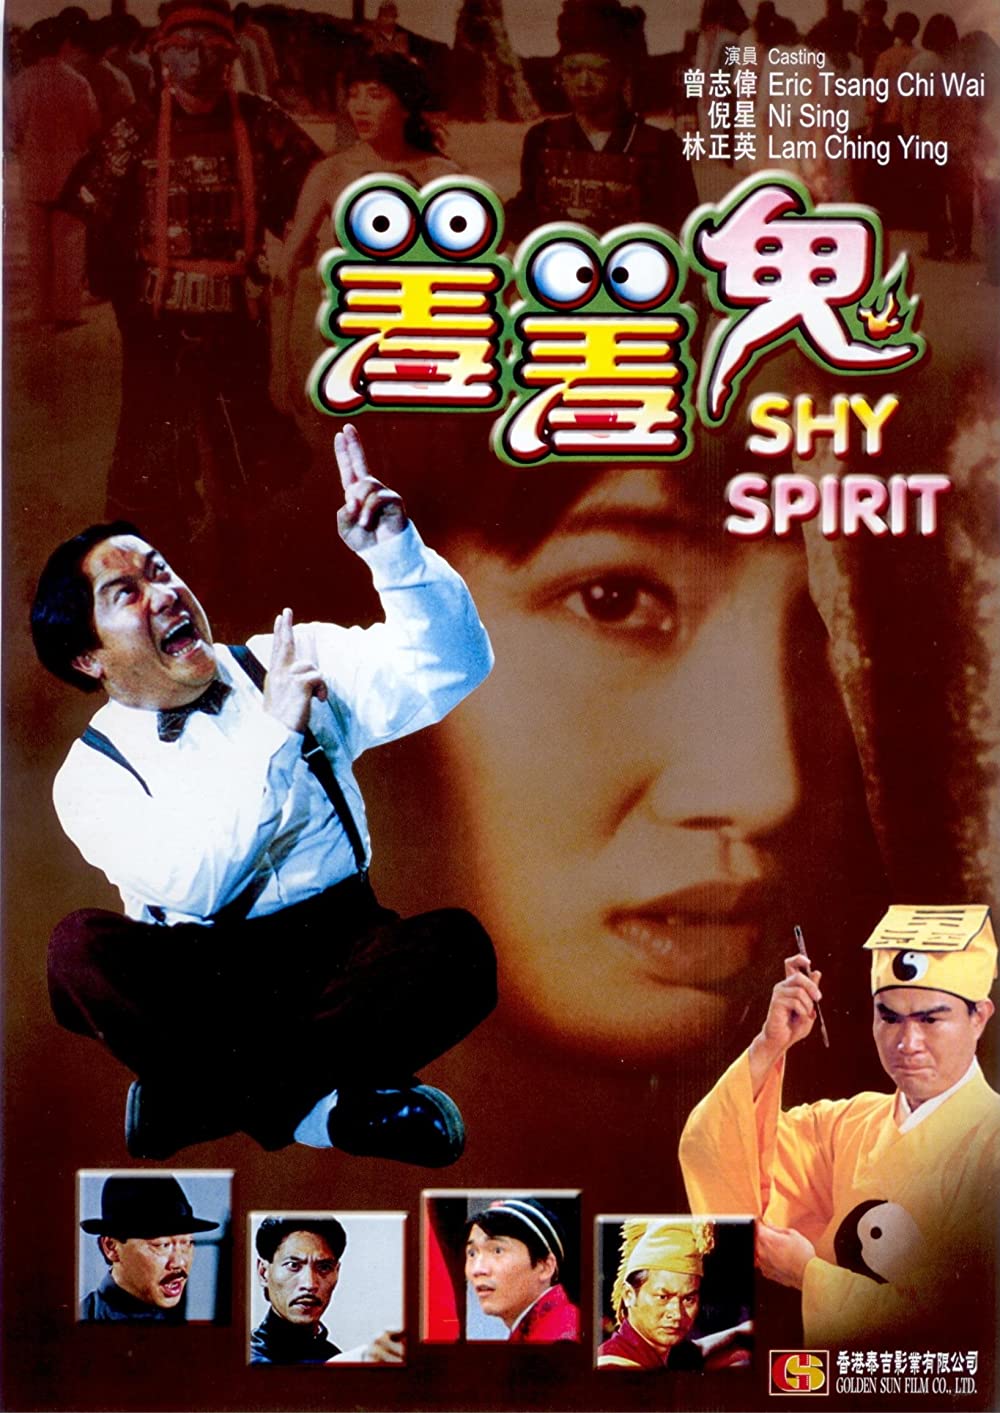 ดูหนังออนไลน์ฟรี Shy Spirit (1988) กัดเต็มเหงือก ไม่เลือกที่กัด หนังเต็มเรื่อง หนังมาสเตอร์ ดูหนังHD ดูหนังออนไลน์ ดูหนังใหม่